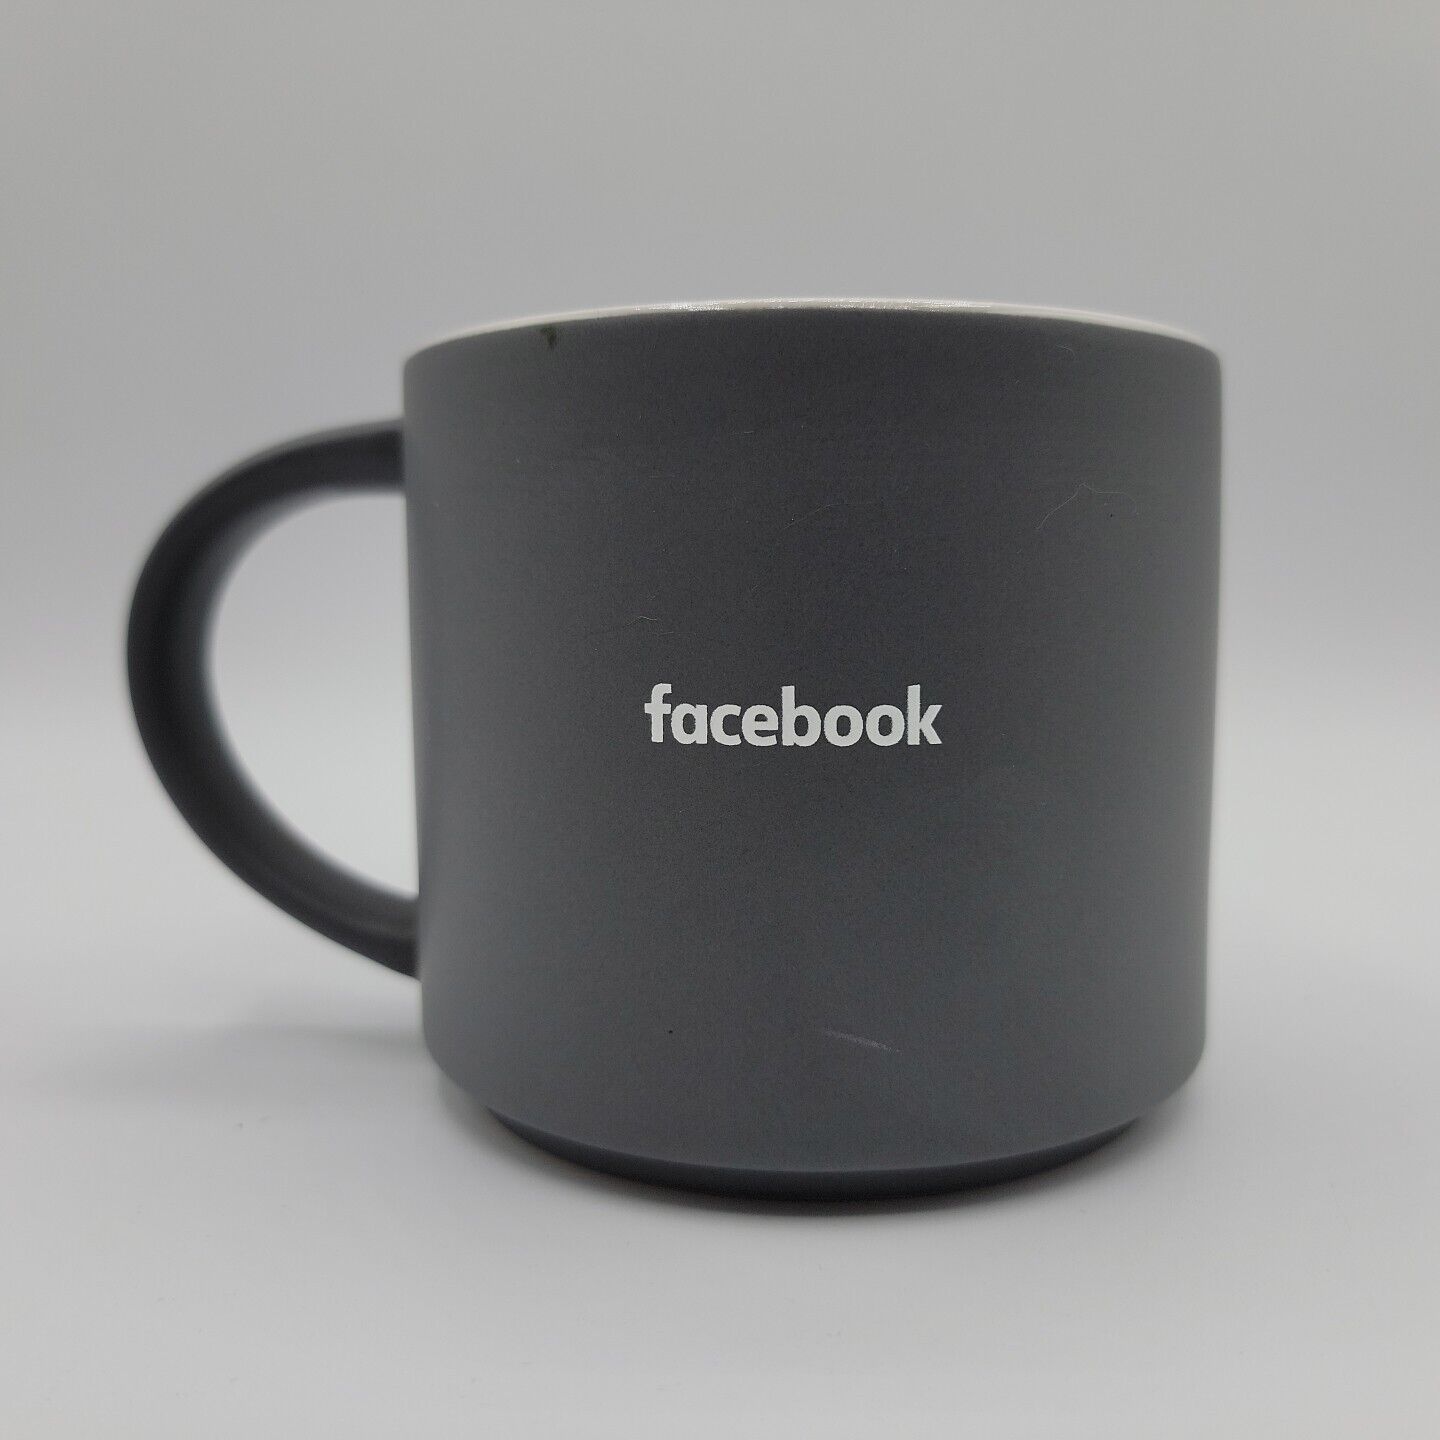 Facebook Coffee Mug Typeface Logo Gray Ceramic Coffee Mug Cup META Advertising